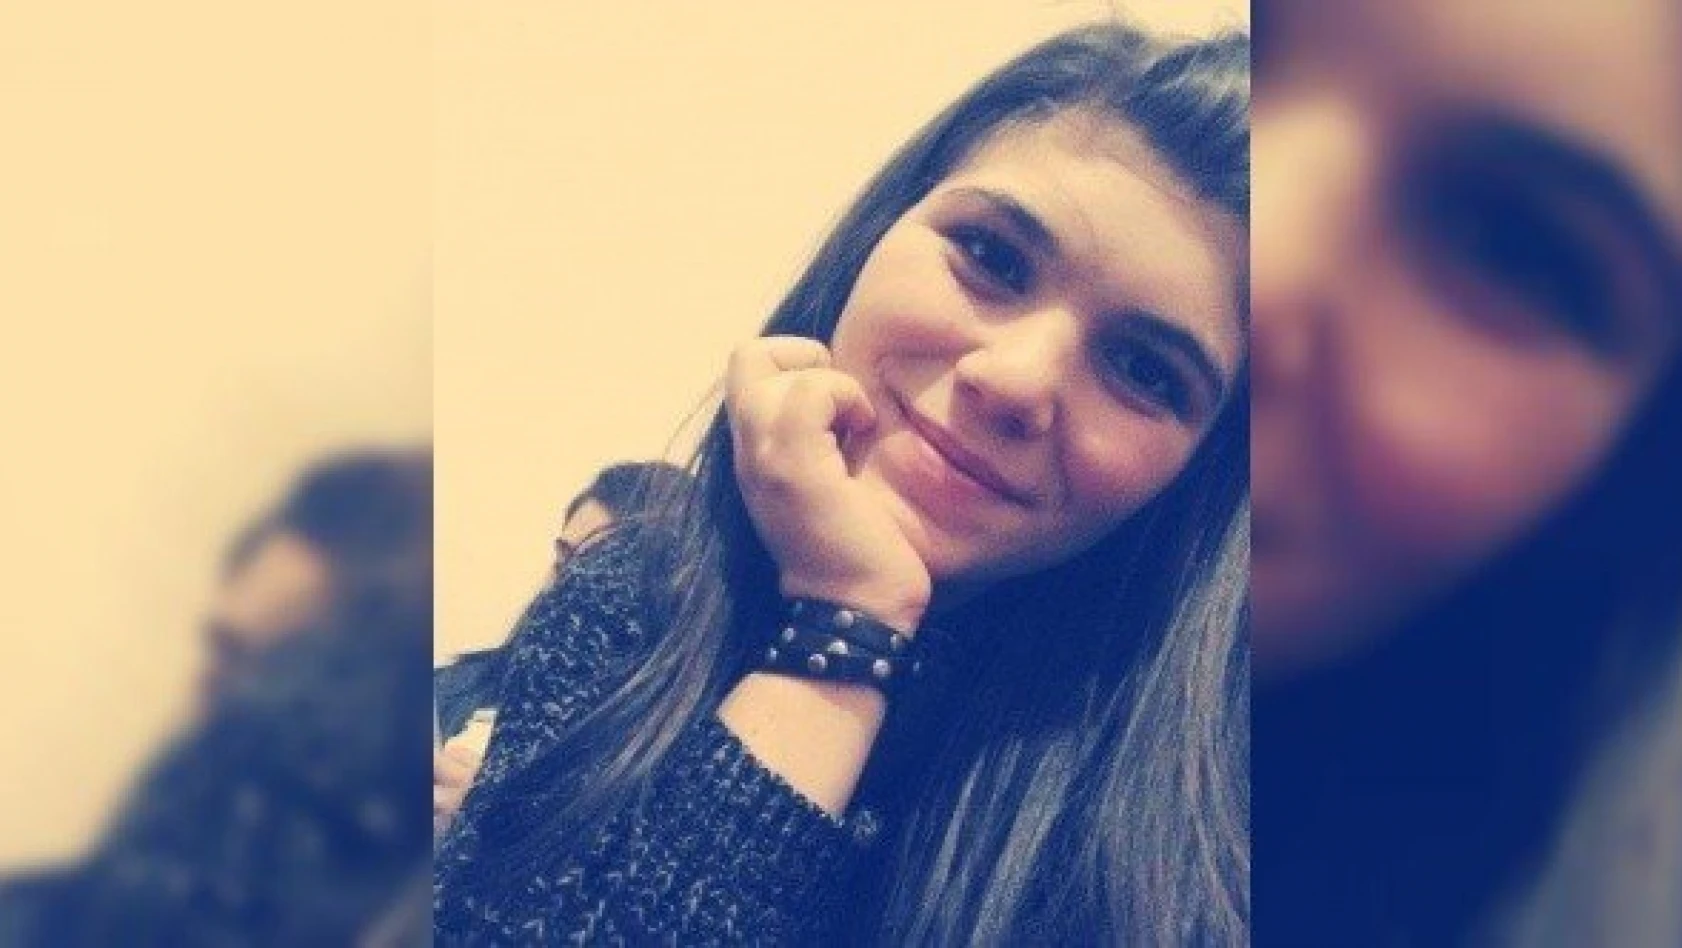 20 yaşındaki genç kız, ilaçtan zehirlenerek hayatını kaybetti